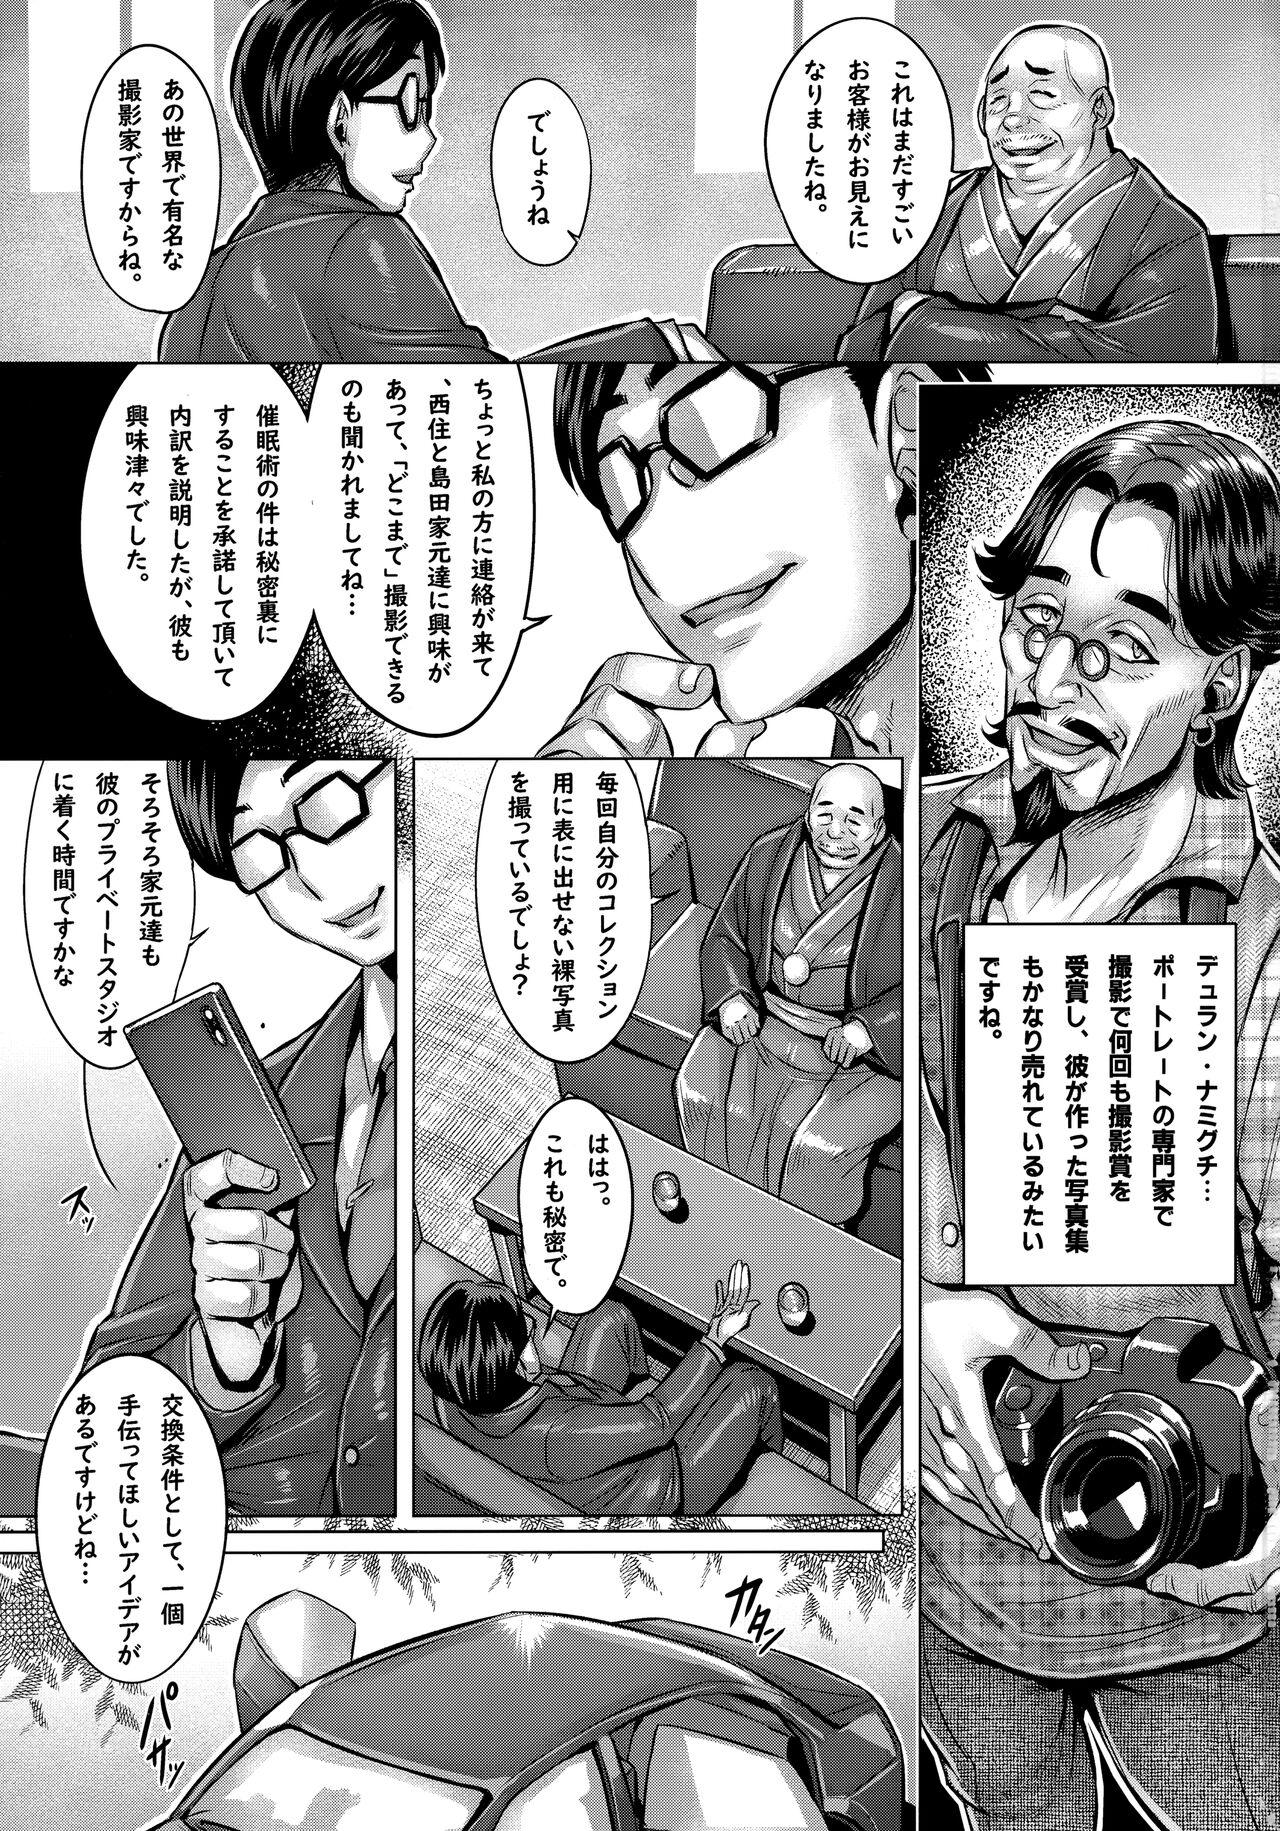 Leaked Sennou Sareta Iemoto-tachi no Zenra Inniku Satsueikai - Girls und panzer Real Amateurs - Page 2